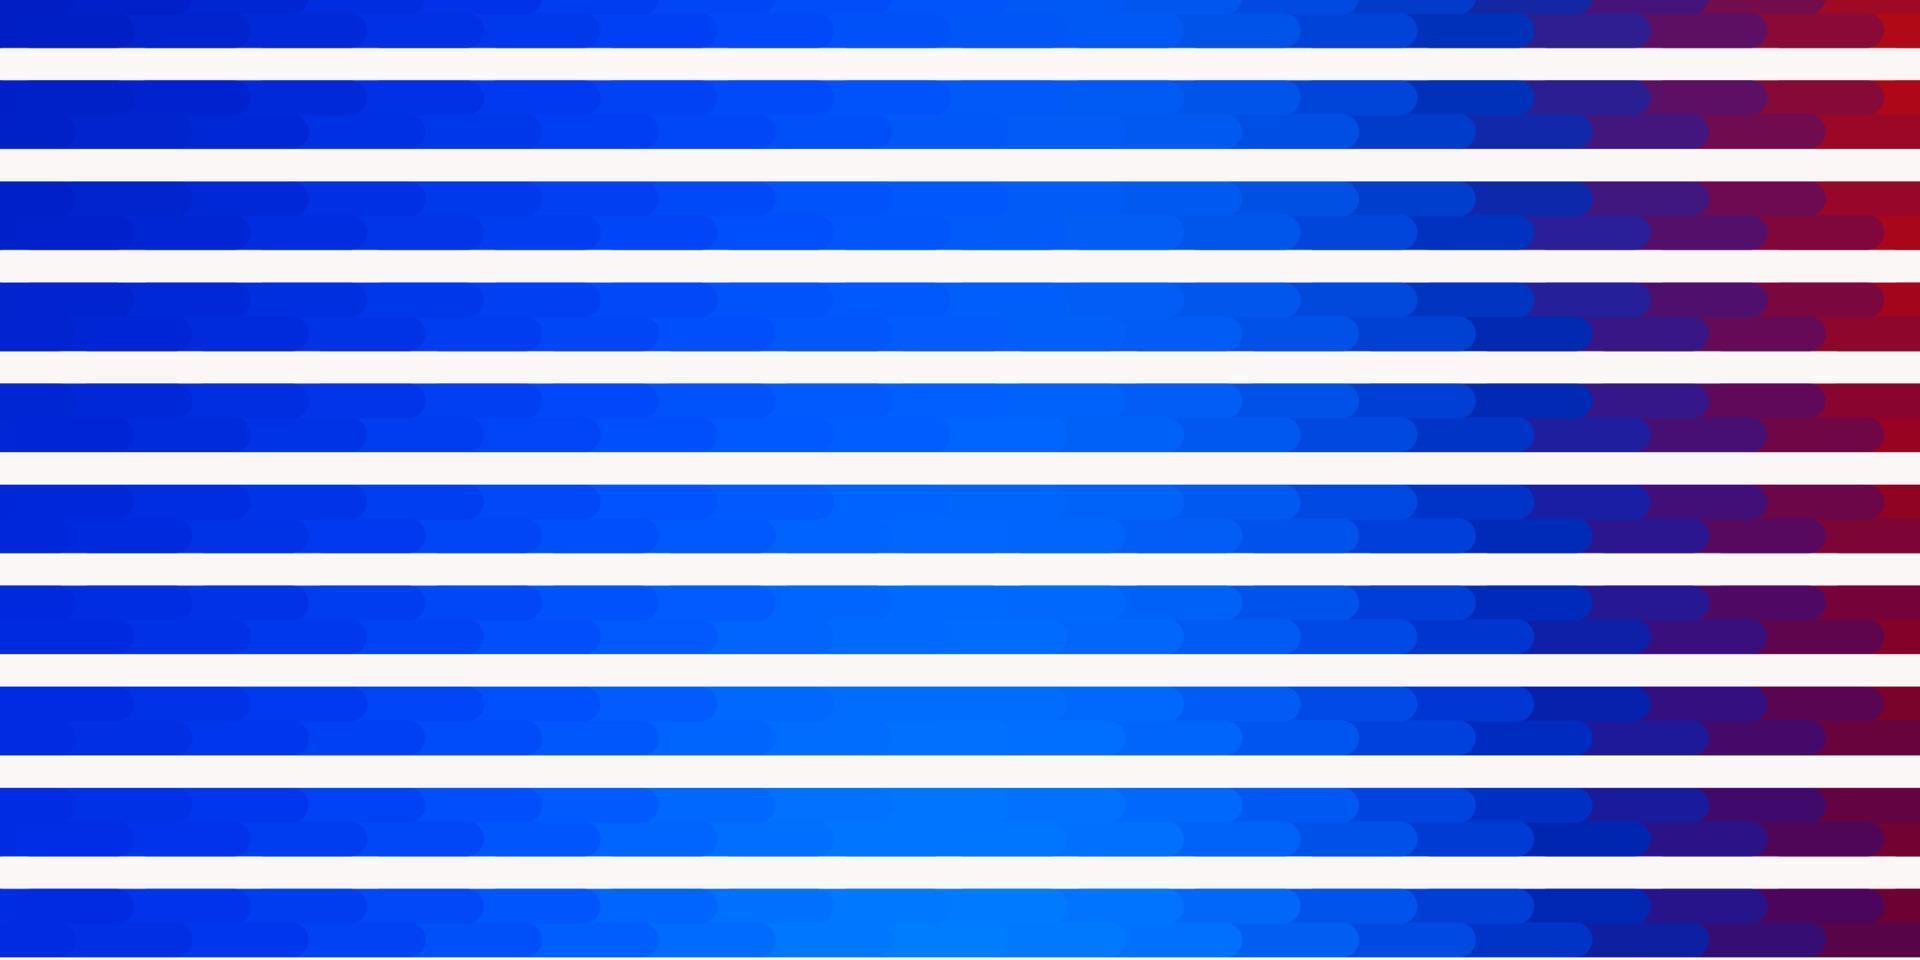 layout de vetor azul e vermelho claro com linhas.